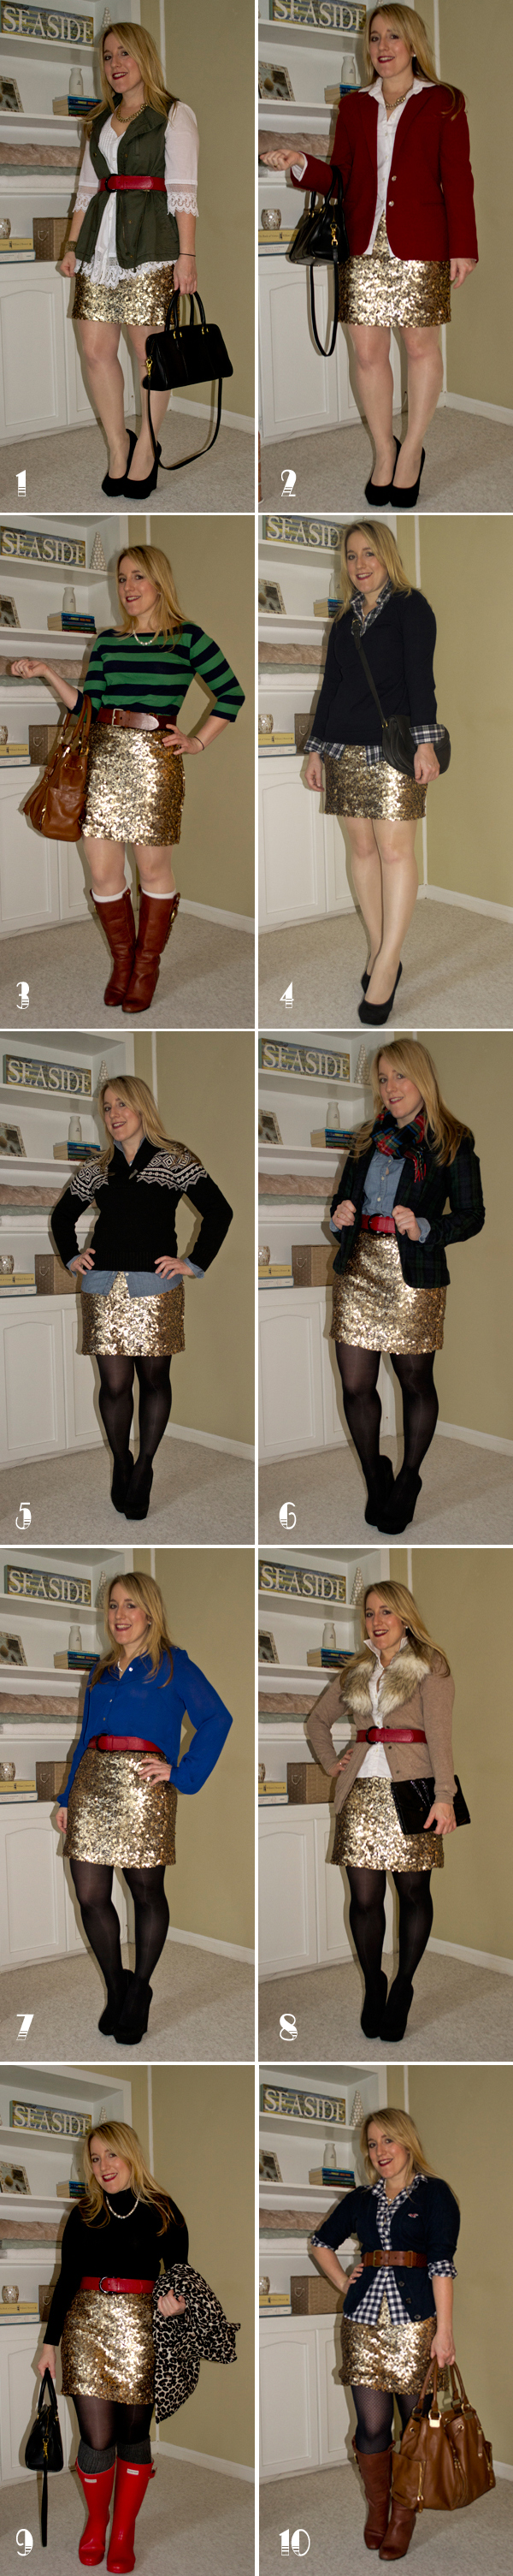 Sequin Skirt - 10 Ways